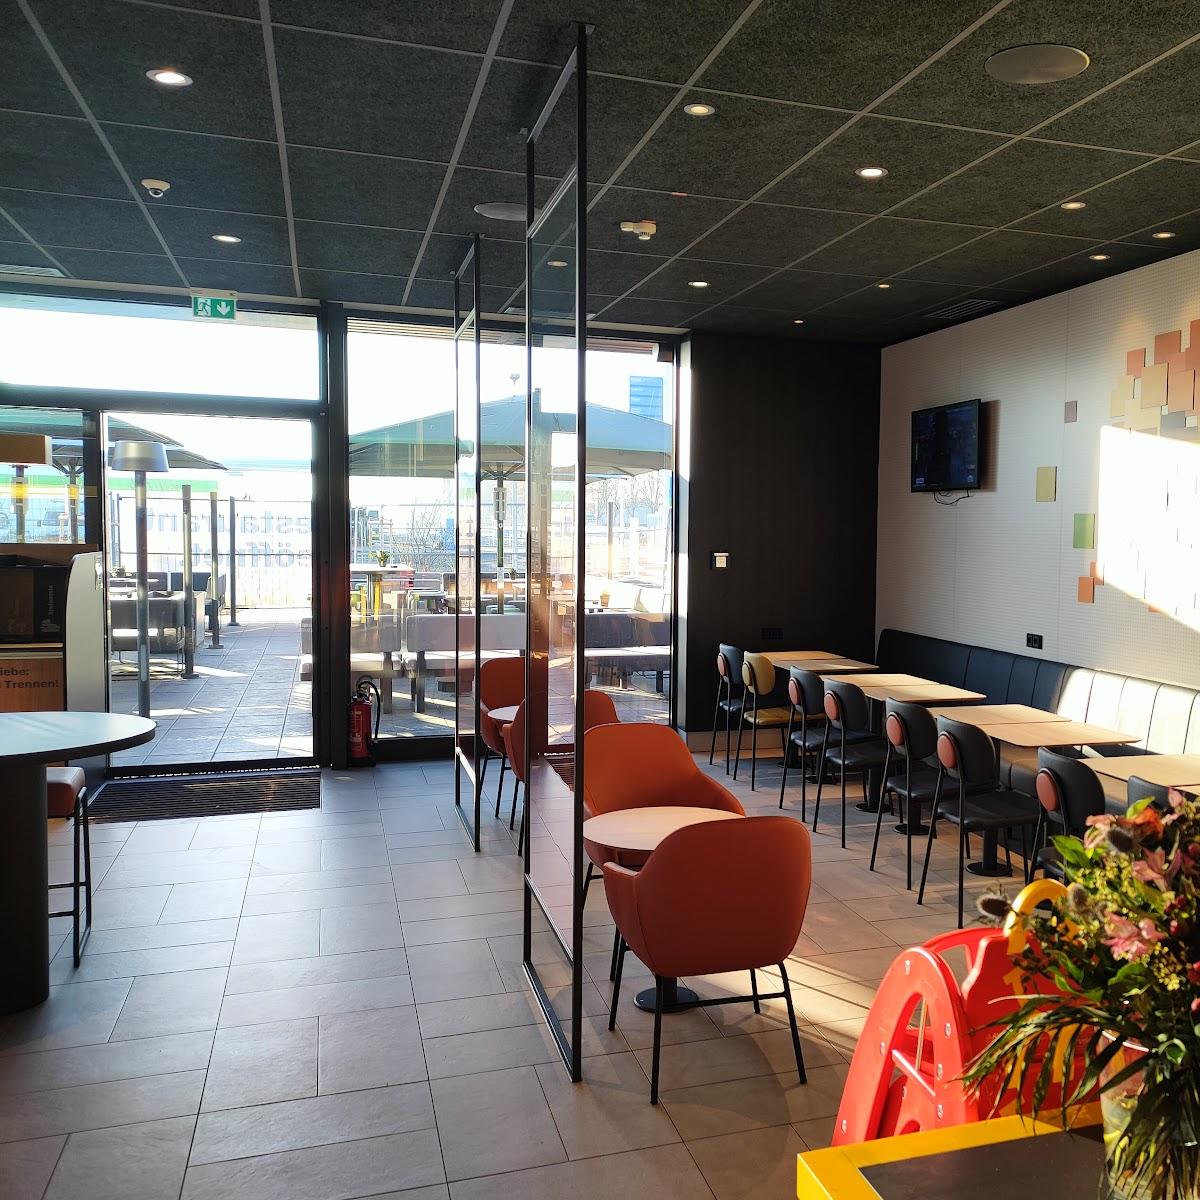 Restaurant "McDonald‘s" in Bad Bentheim